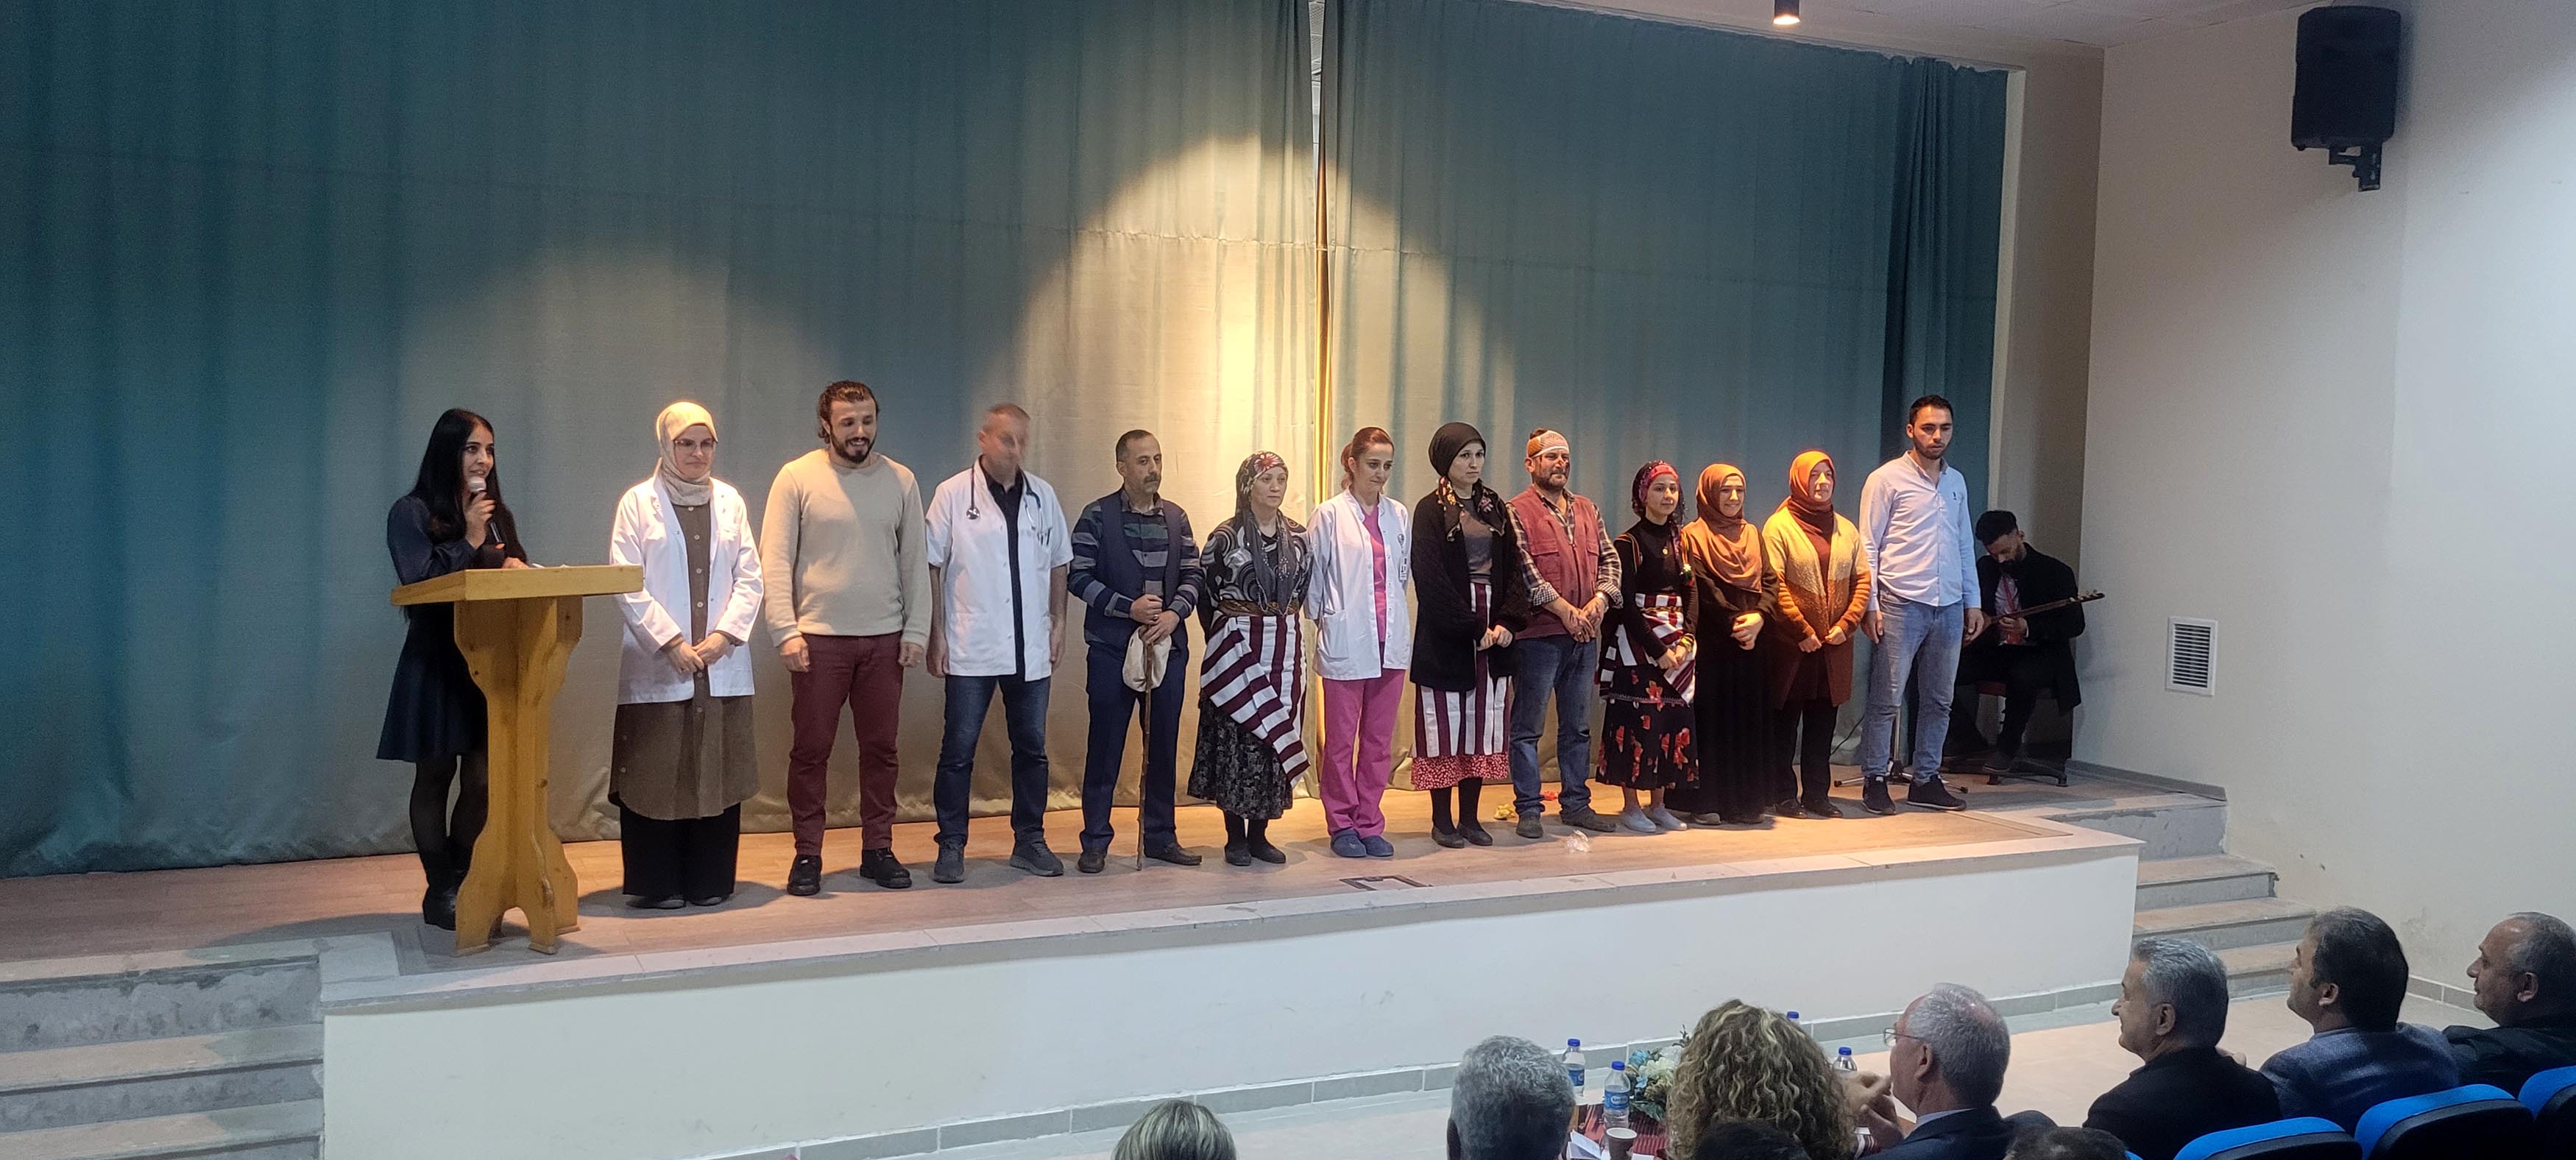 Trabzon'da sağlıkçıların "kim haklı" tiyatrosu ilgi gördü